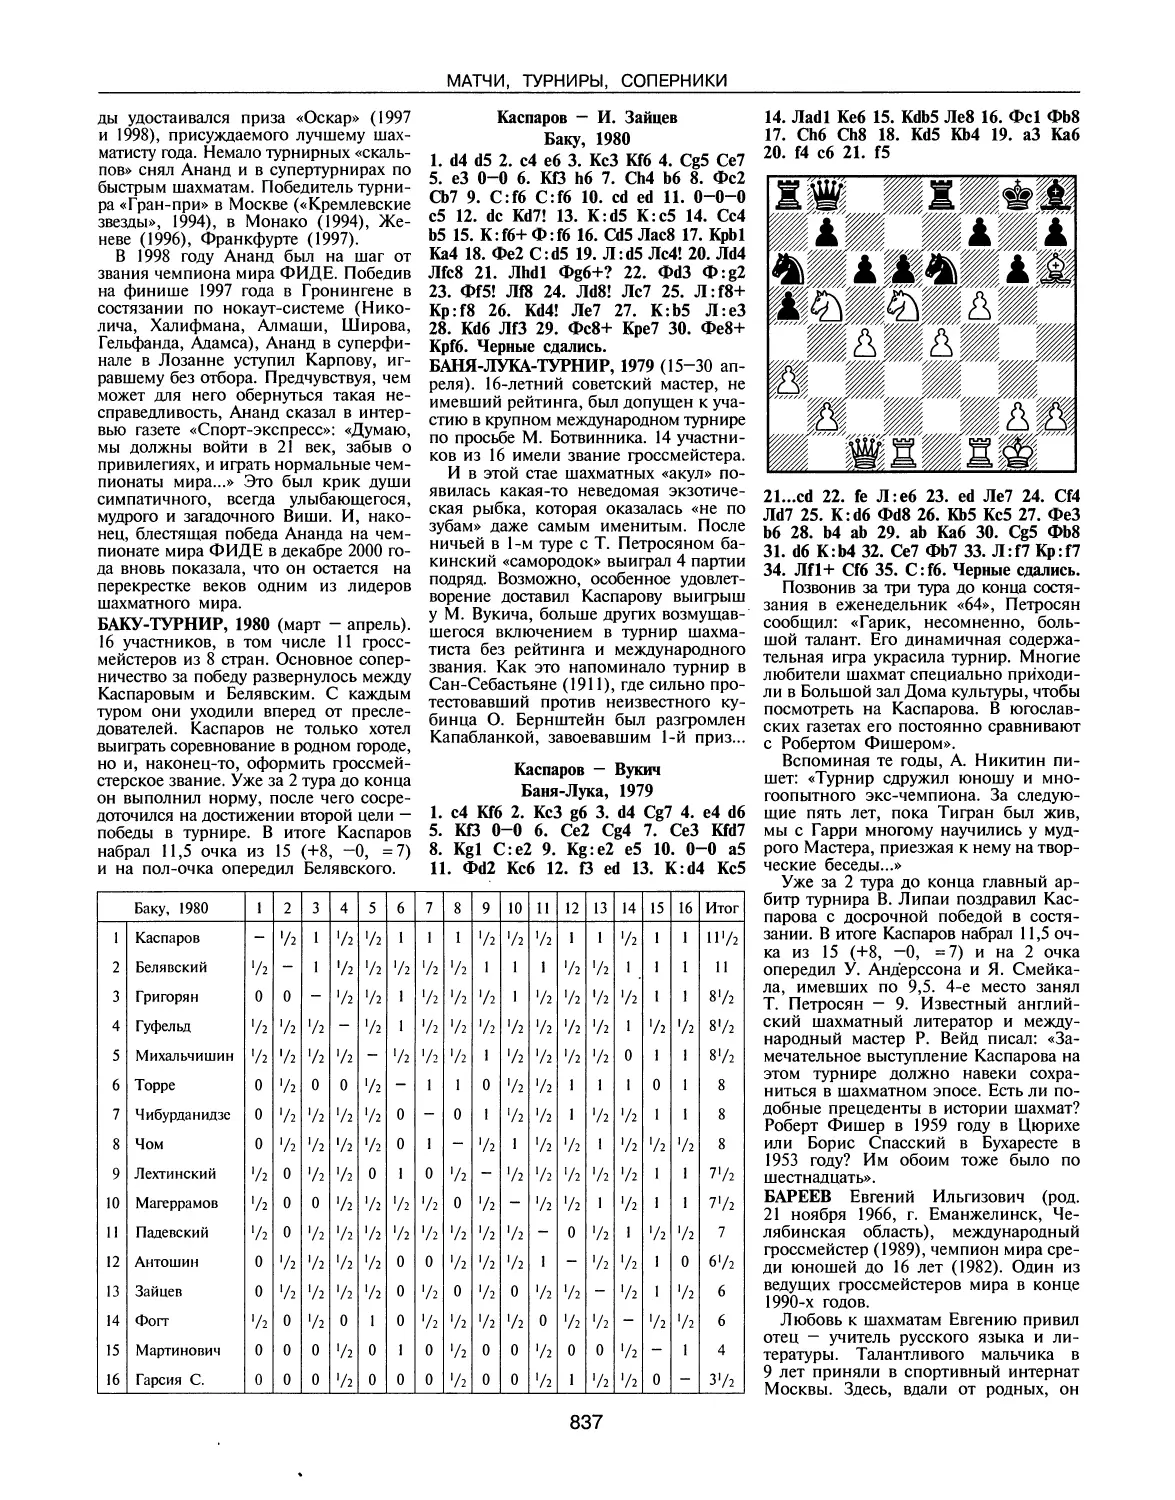 Баку-турнир, 1980
Баня-Лука-турнир, 1979
Бареев Е.